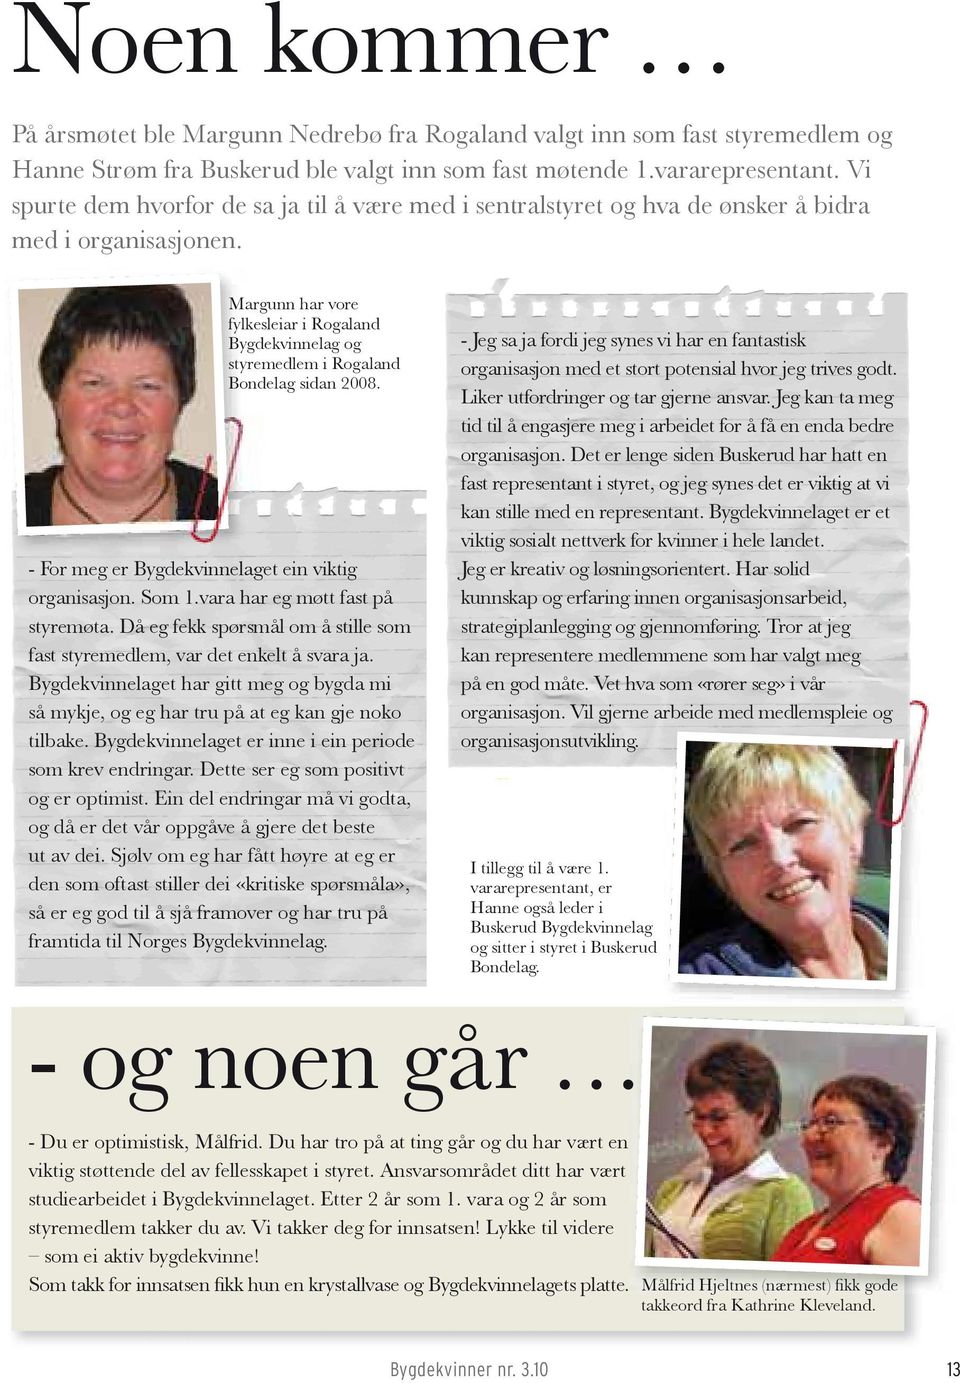 Margunn har vore fylkesleiar i Rogaland Bygdekvinnelag og styremedlem i Rogaland Bondelag sidan 2008. - For meg er Bygdekvinnelaget nela ein viktig organisasjon. Som 1.